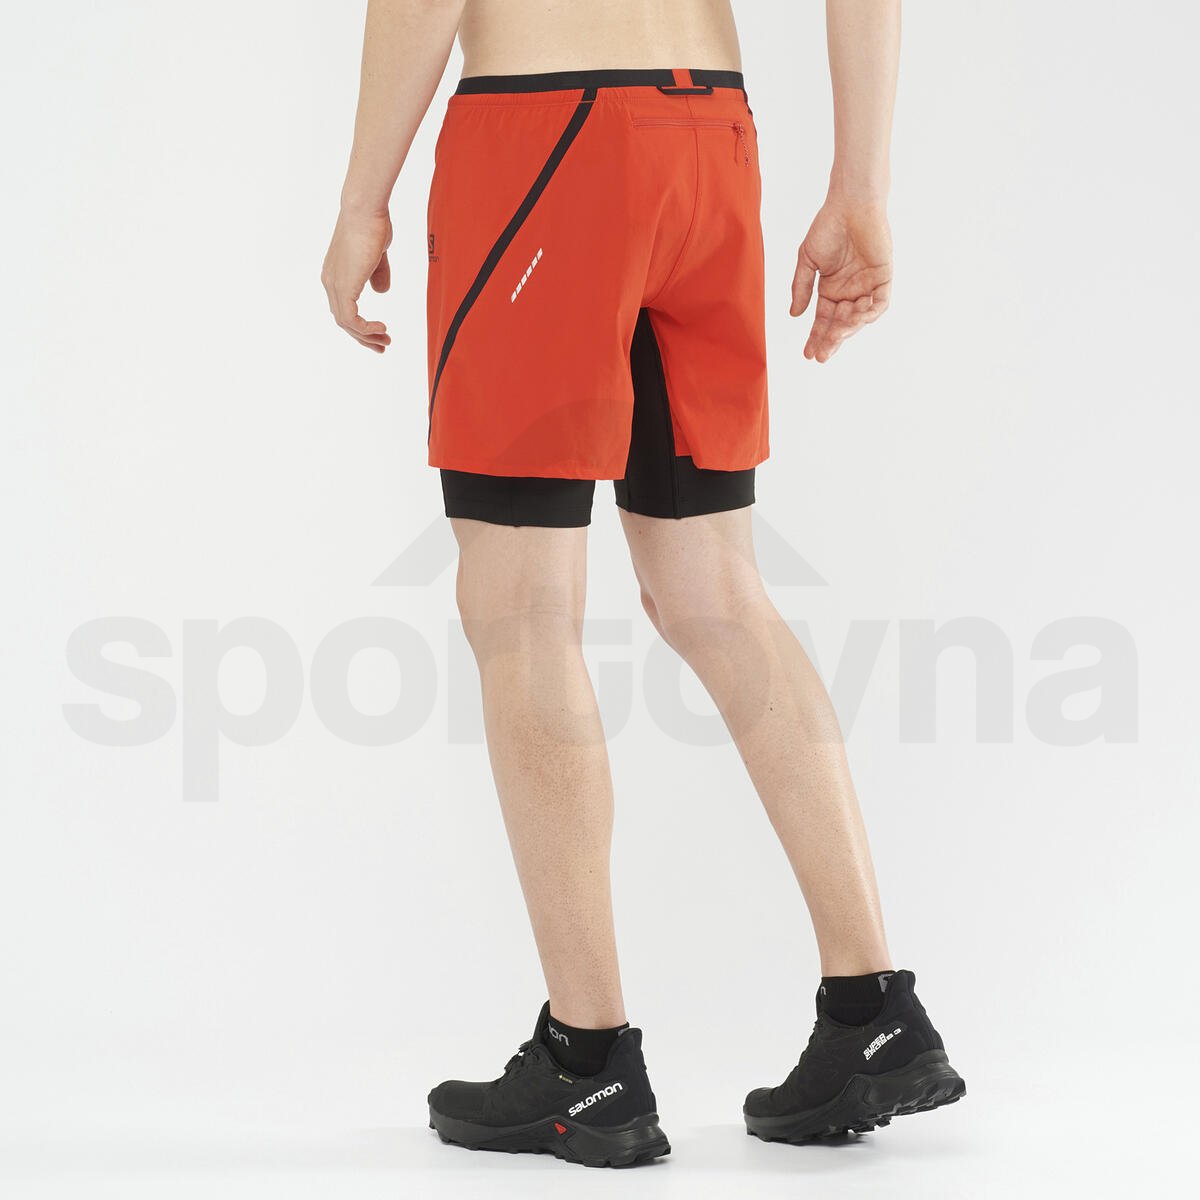 Kraťasy Salomon Cross Twinskin Shorts M- červená/oranžová